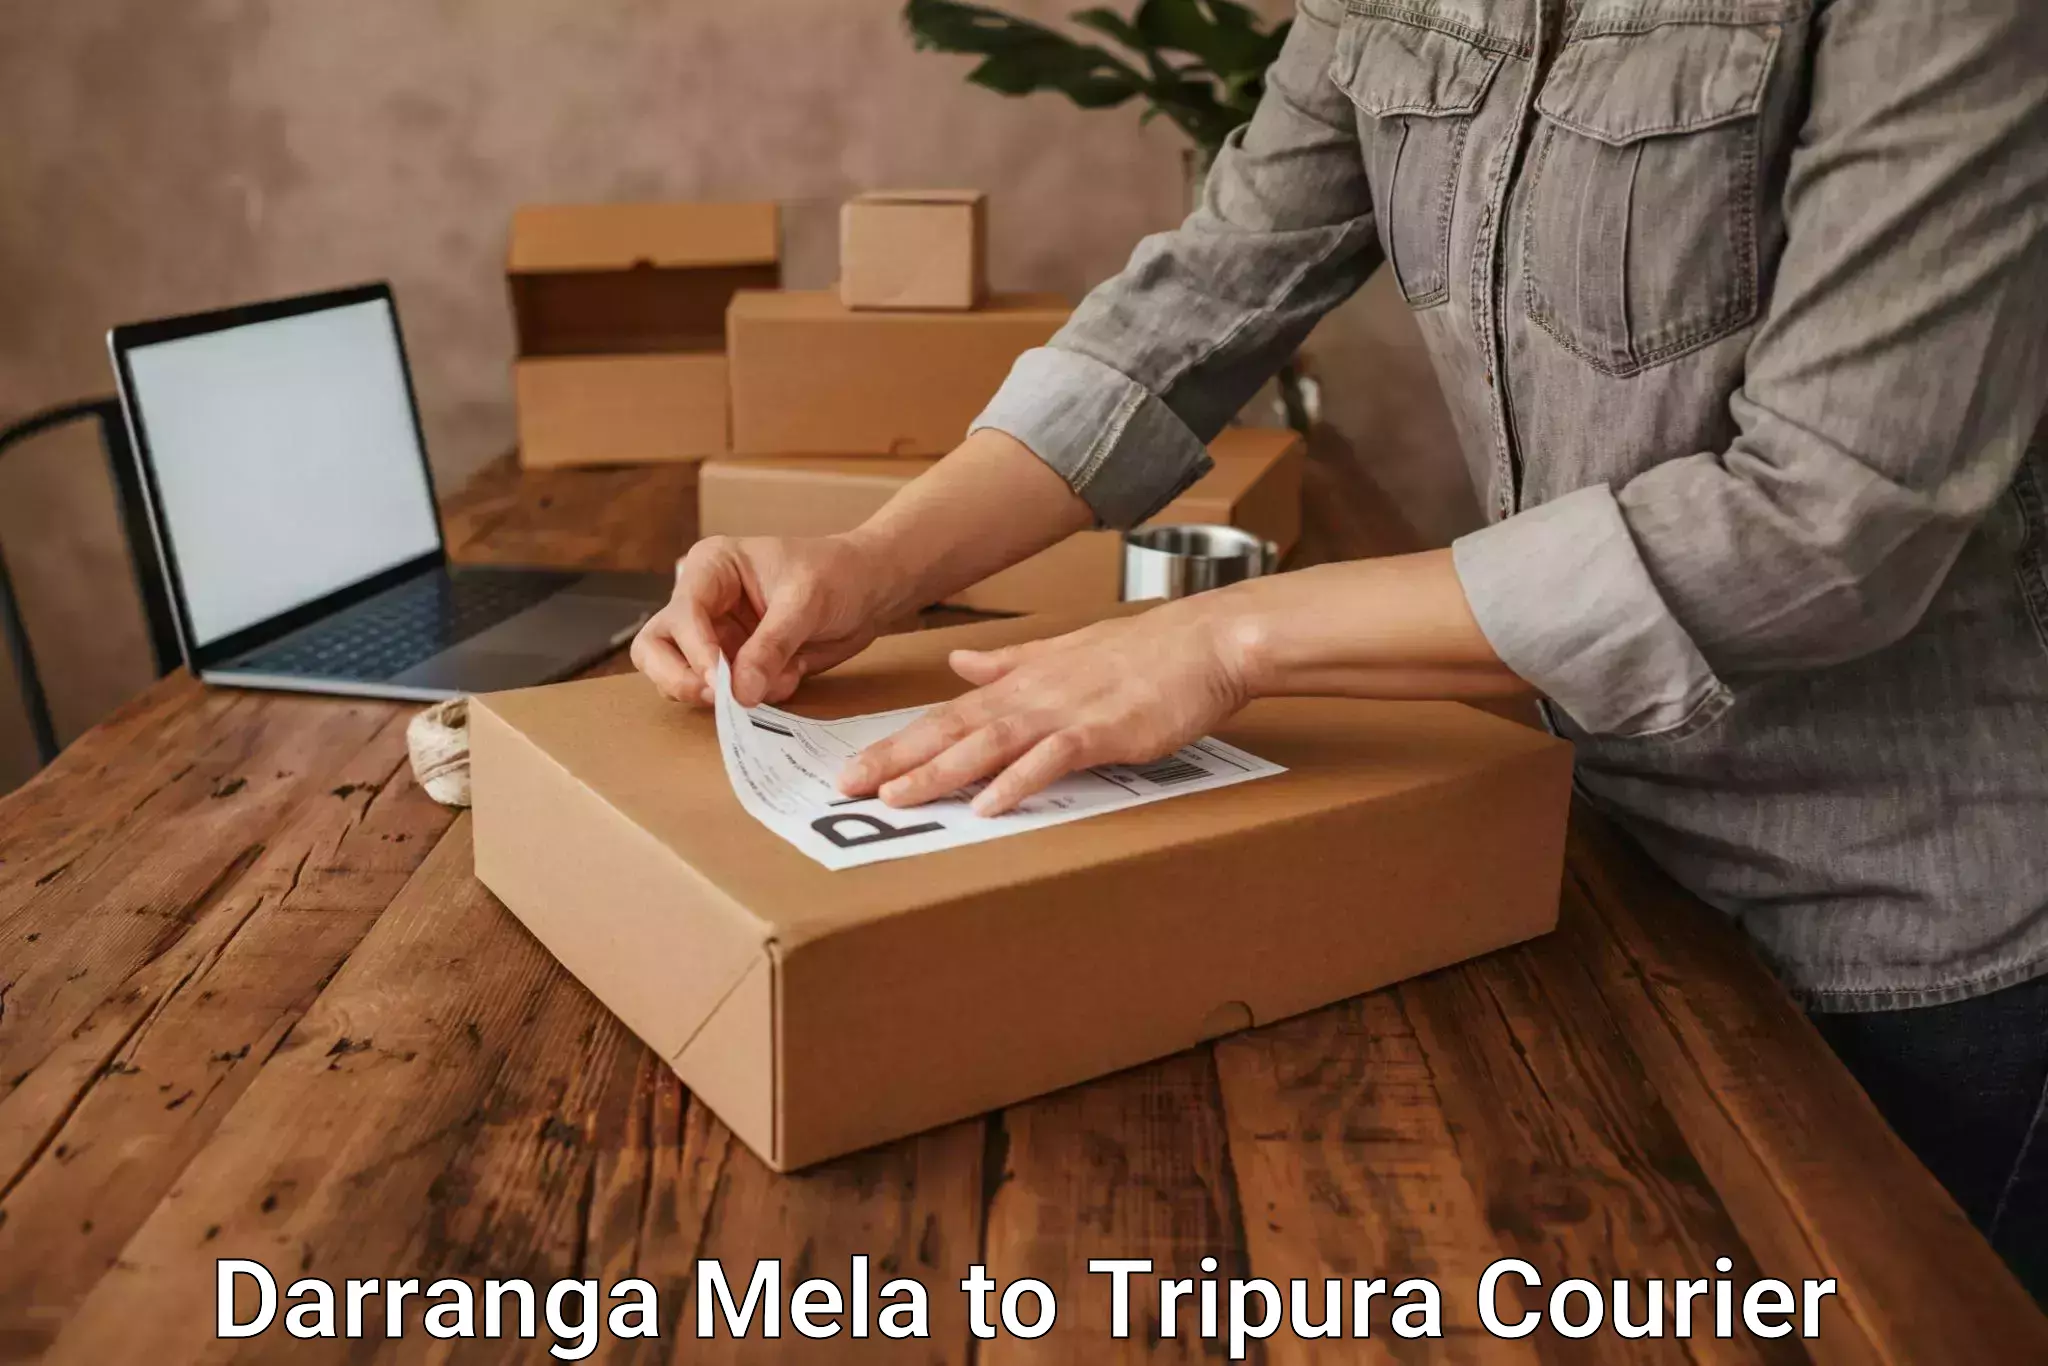 Business shipping needs Darranga Mela to South Tripura